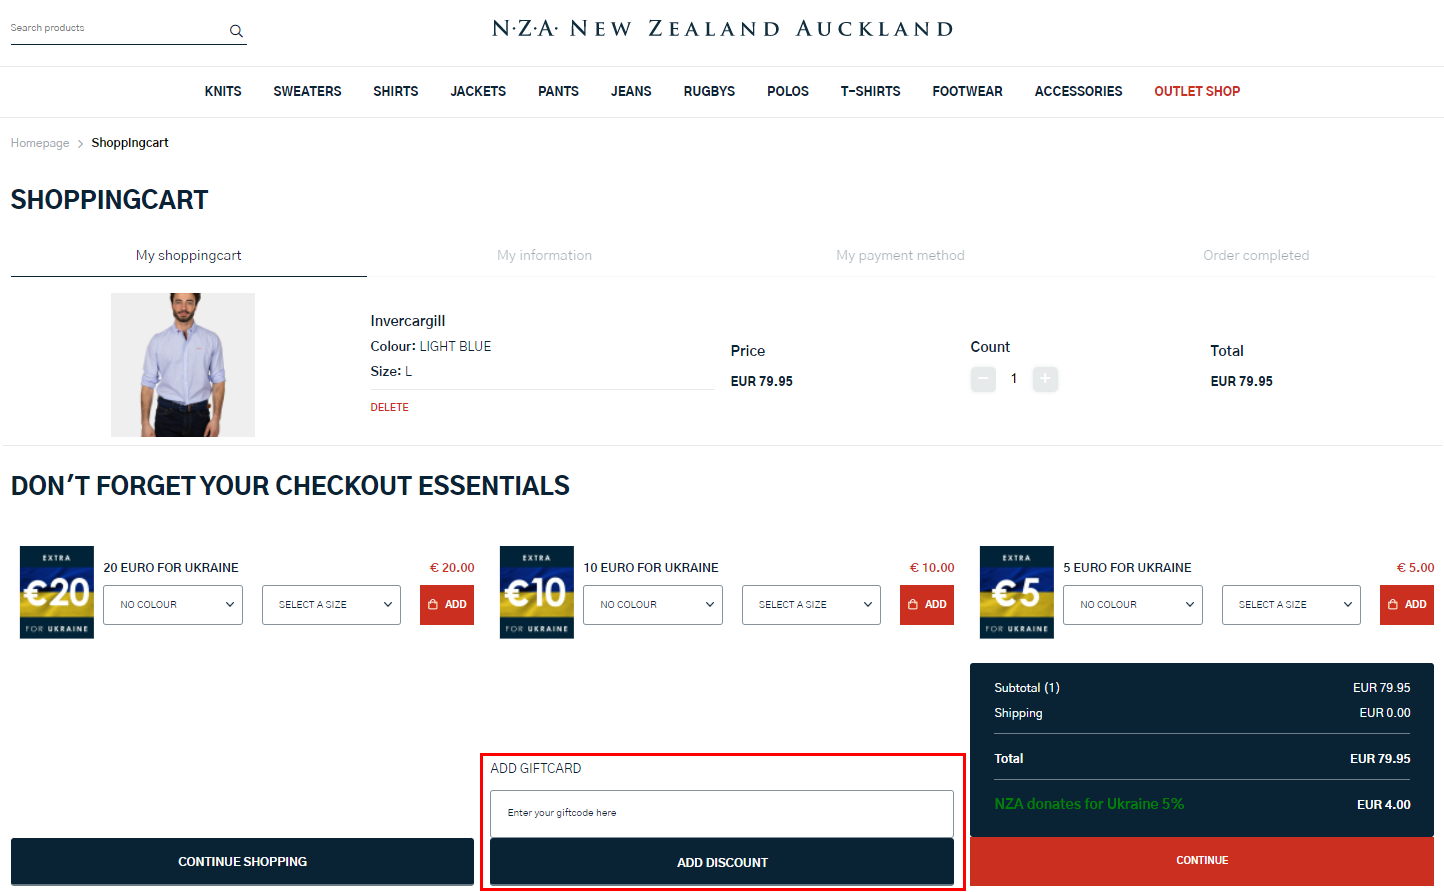 NZA New Zealand Auckland kortingscode gebruiken